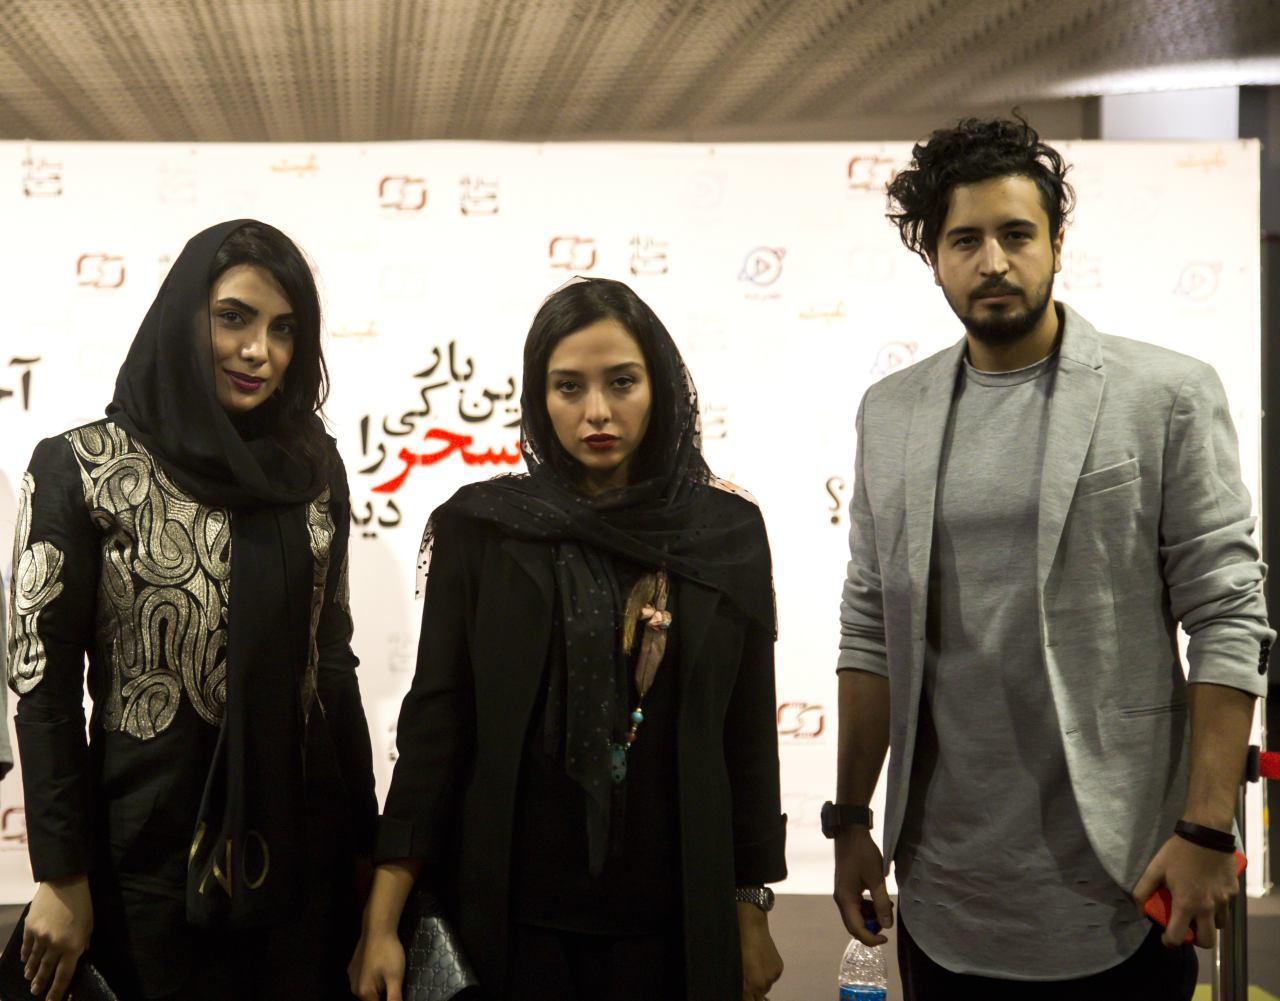 آناهیتا درگاهی در اکران افتتاحیه فیلم سینمایی آخرین بار کی سحر را دیدی؟ به همراه مهرداد صدیقیان